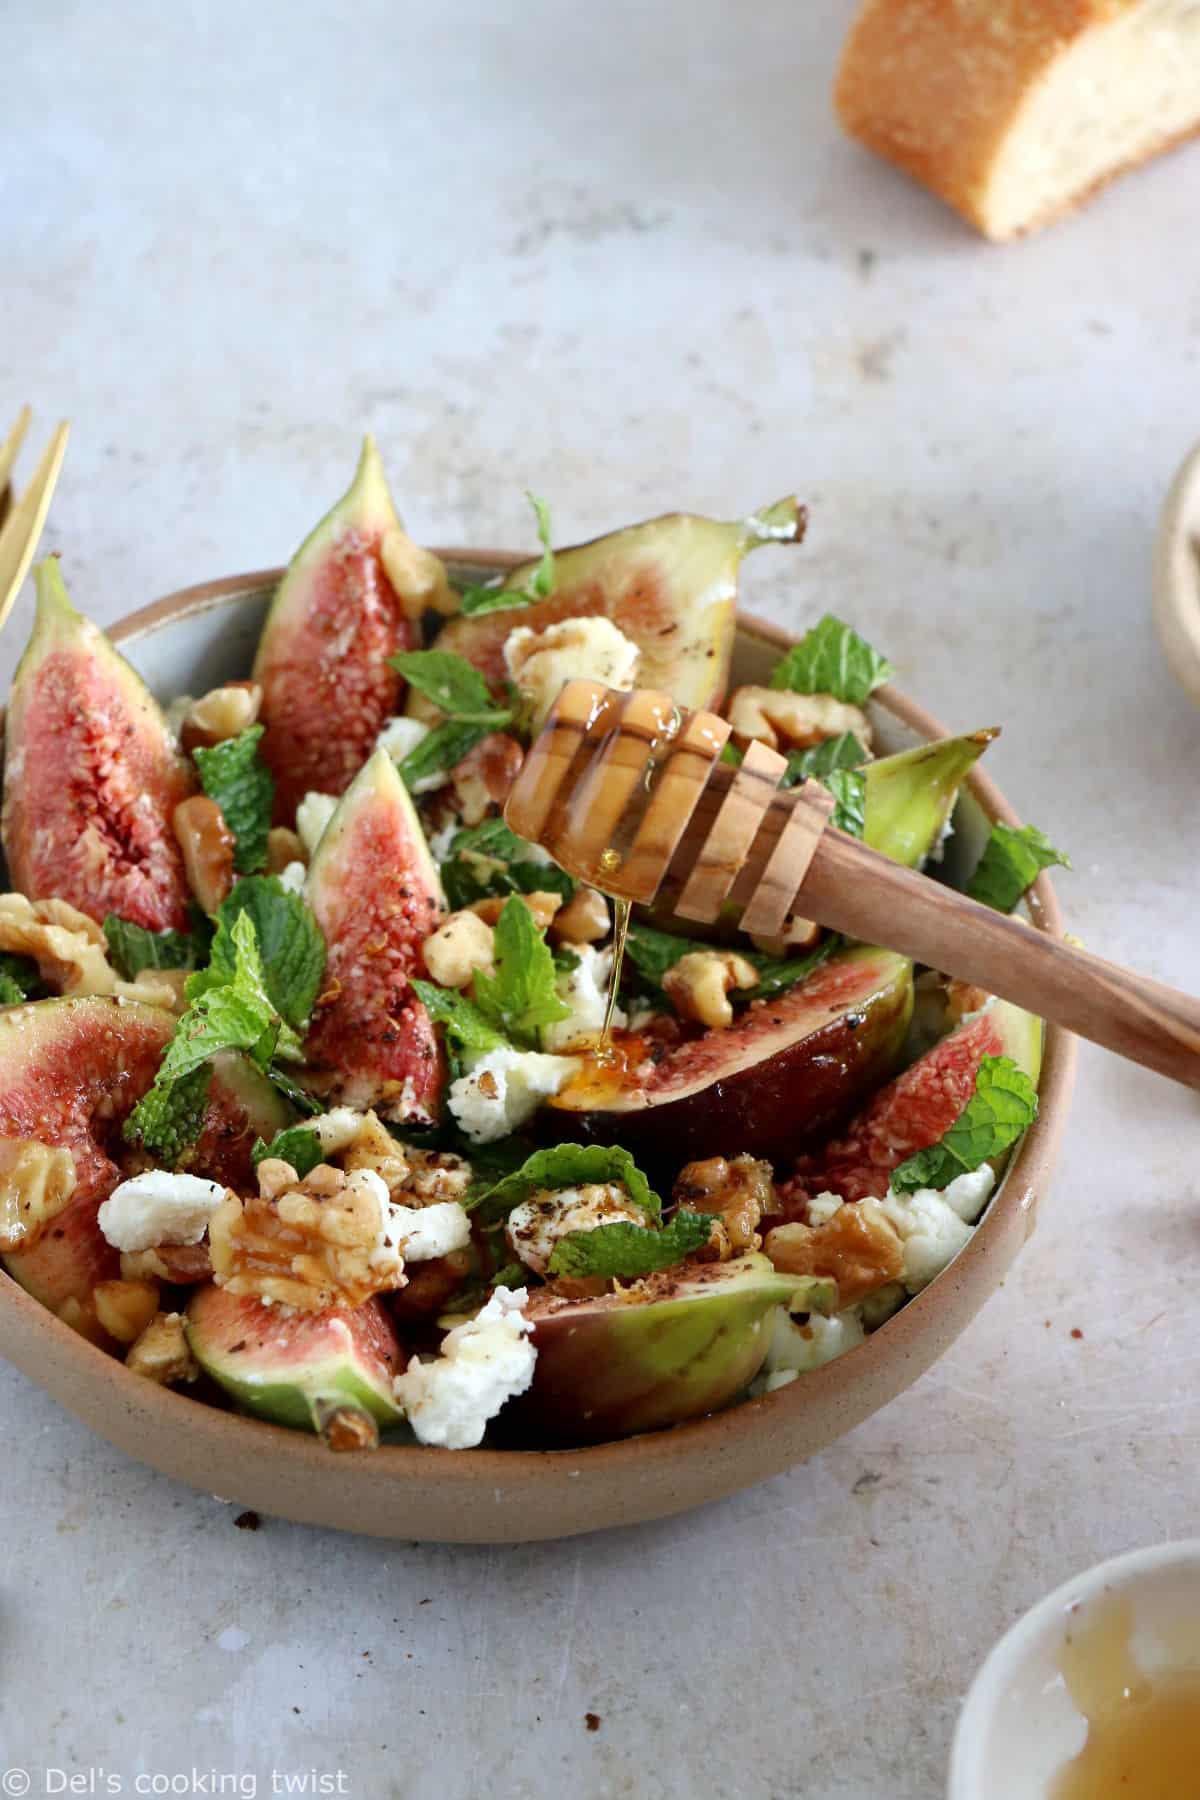 Cette salade de figues, chèvre et noix est d'une simplicité enfantine et regorge de saveurs fraîches et subtiles.